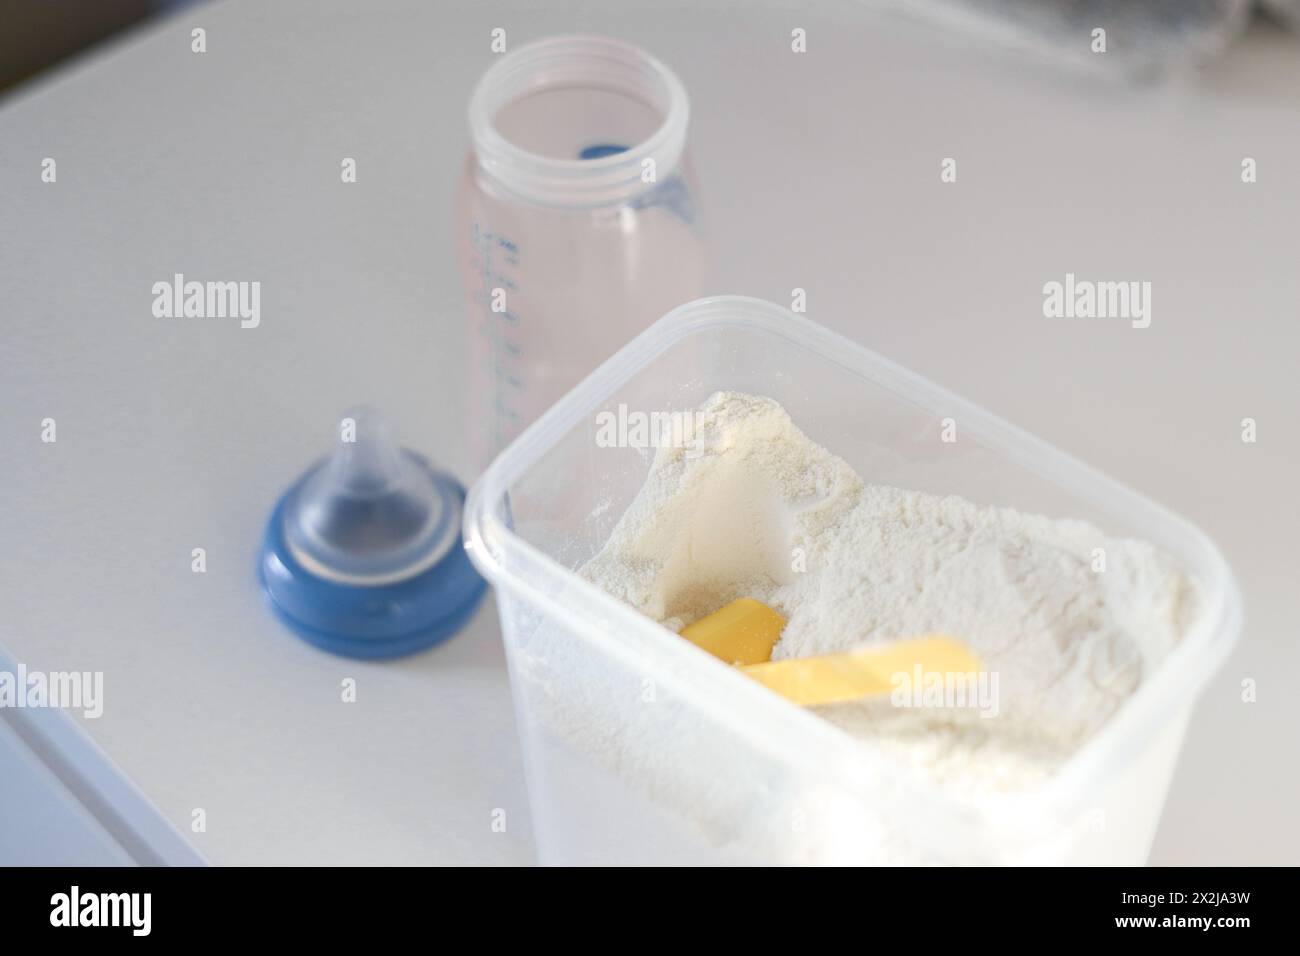 Gros plan vue de dessus du lait en poudre sec pour nourrir les bébés dans une boîte avec une pelle en plastique jaune et un biberon vide Banque D'Images